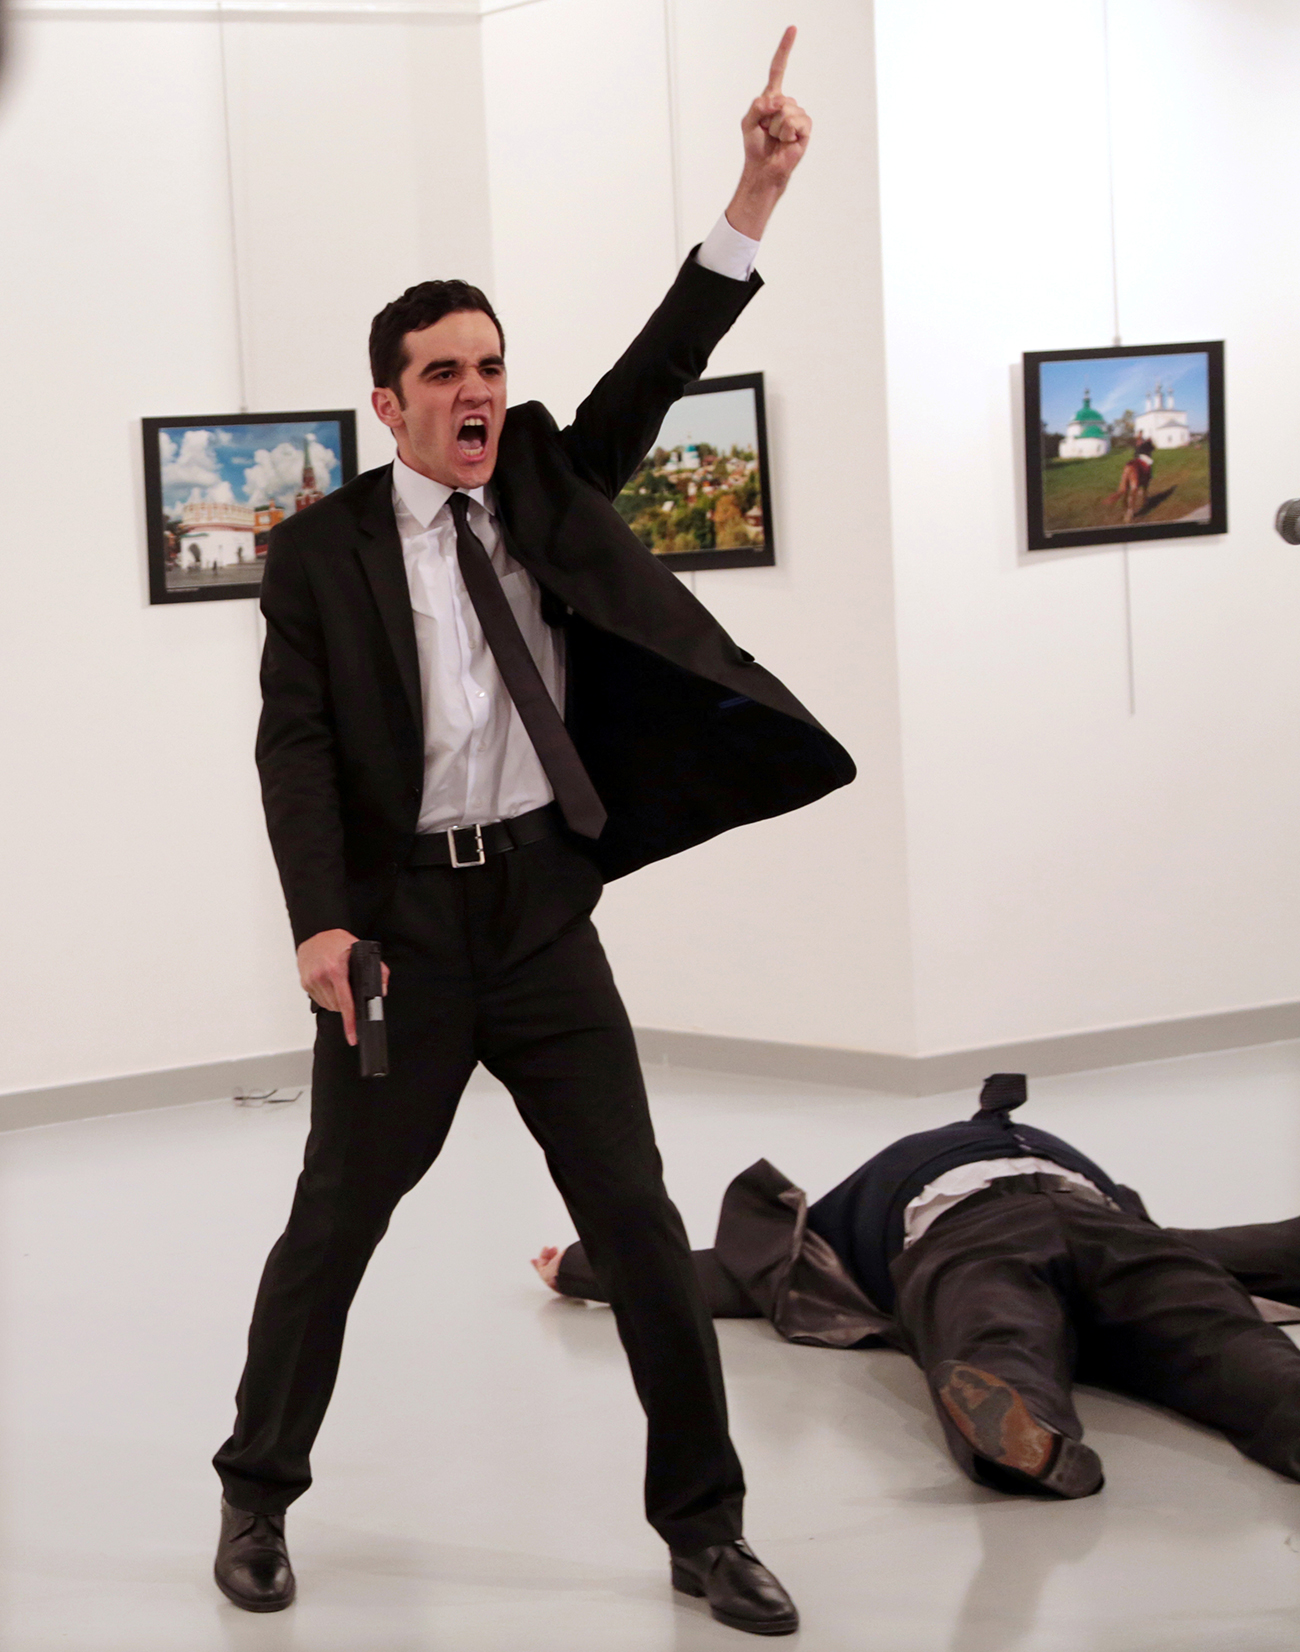 Imagem registra expressão do assassino do embaixador russo na Turquia, Andrei Karlov (Foto: Burhan Ozbilici/AP)